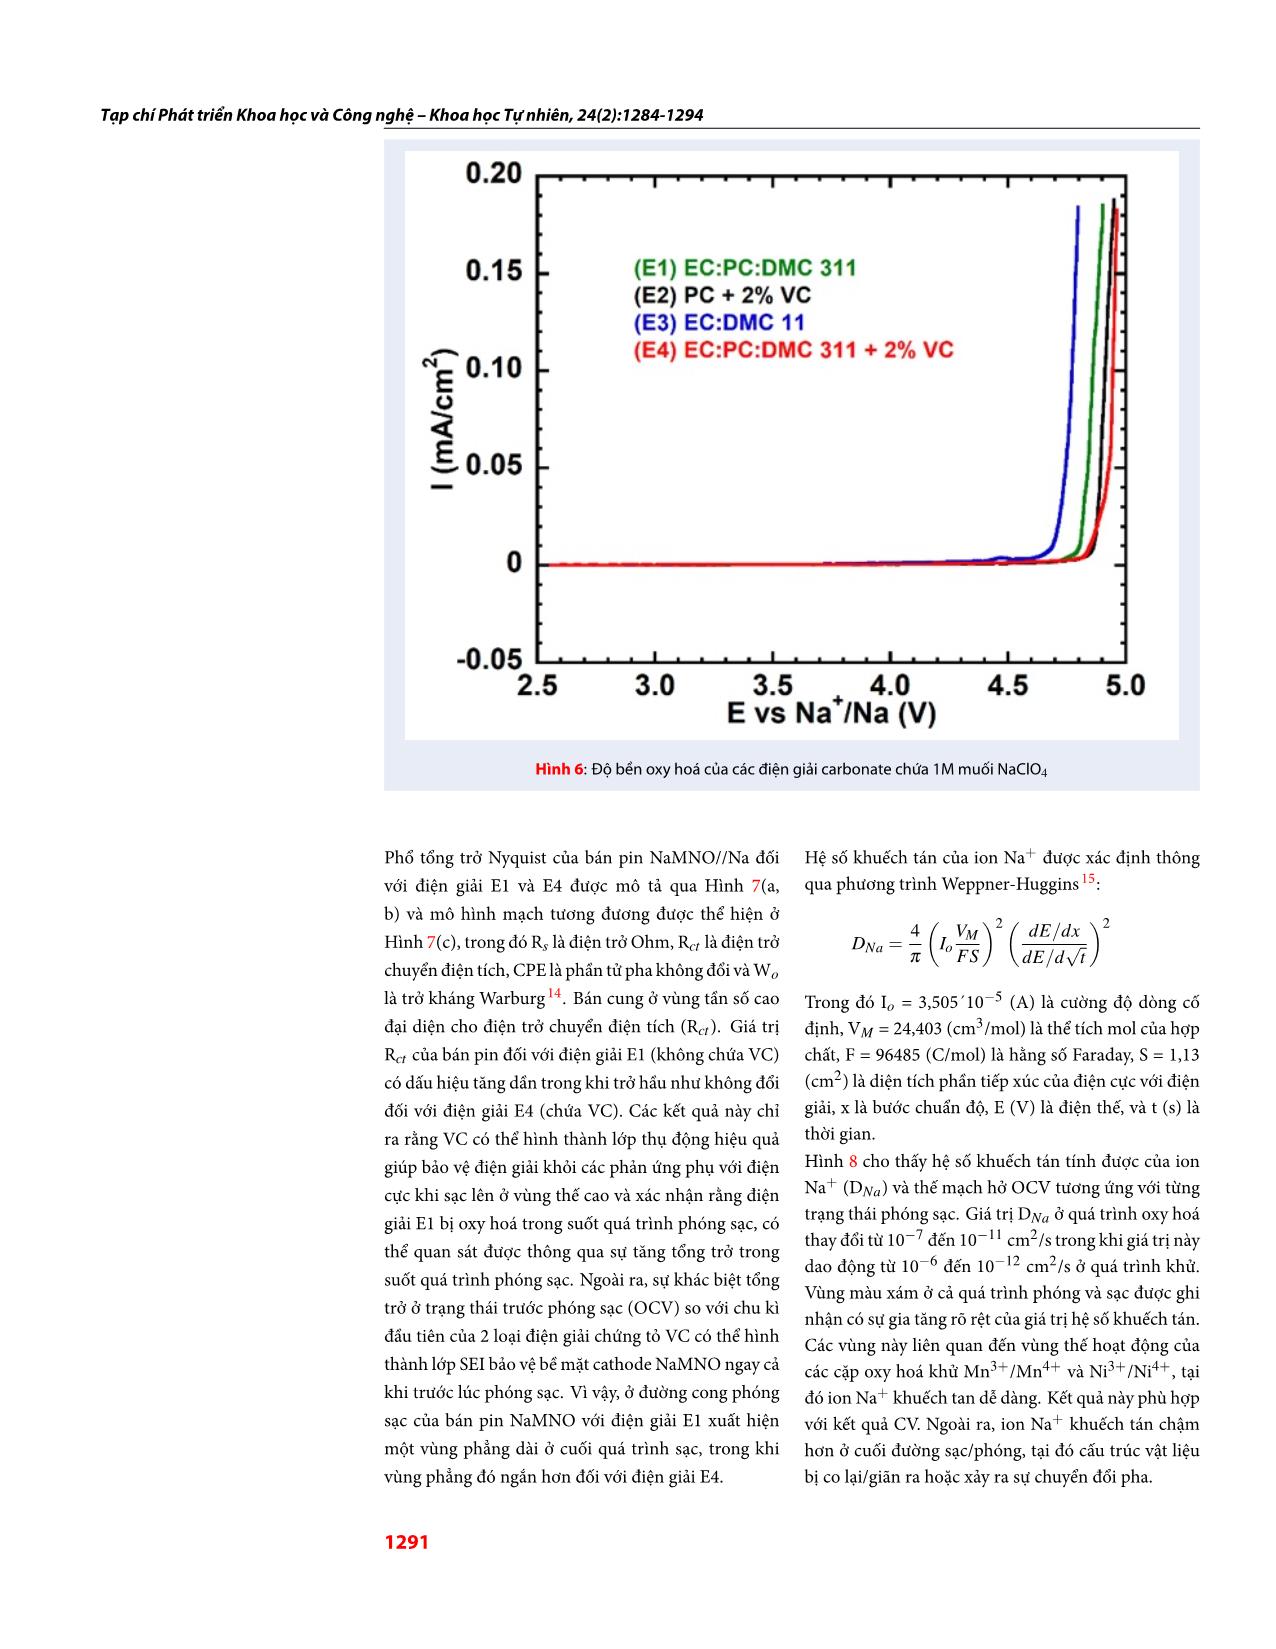 Tổng hợp và khảo sát tính chất điện hoá của vật liệu Na0.67Mn0:75Ni0:25O2 trong hệ điện giải carbonate trang 8